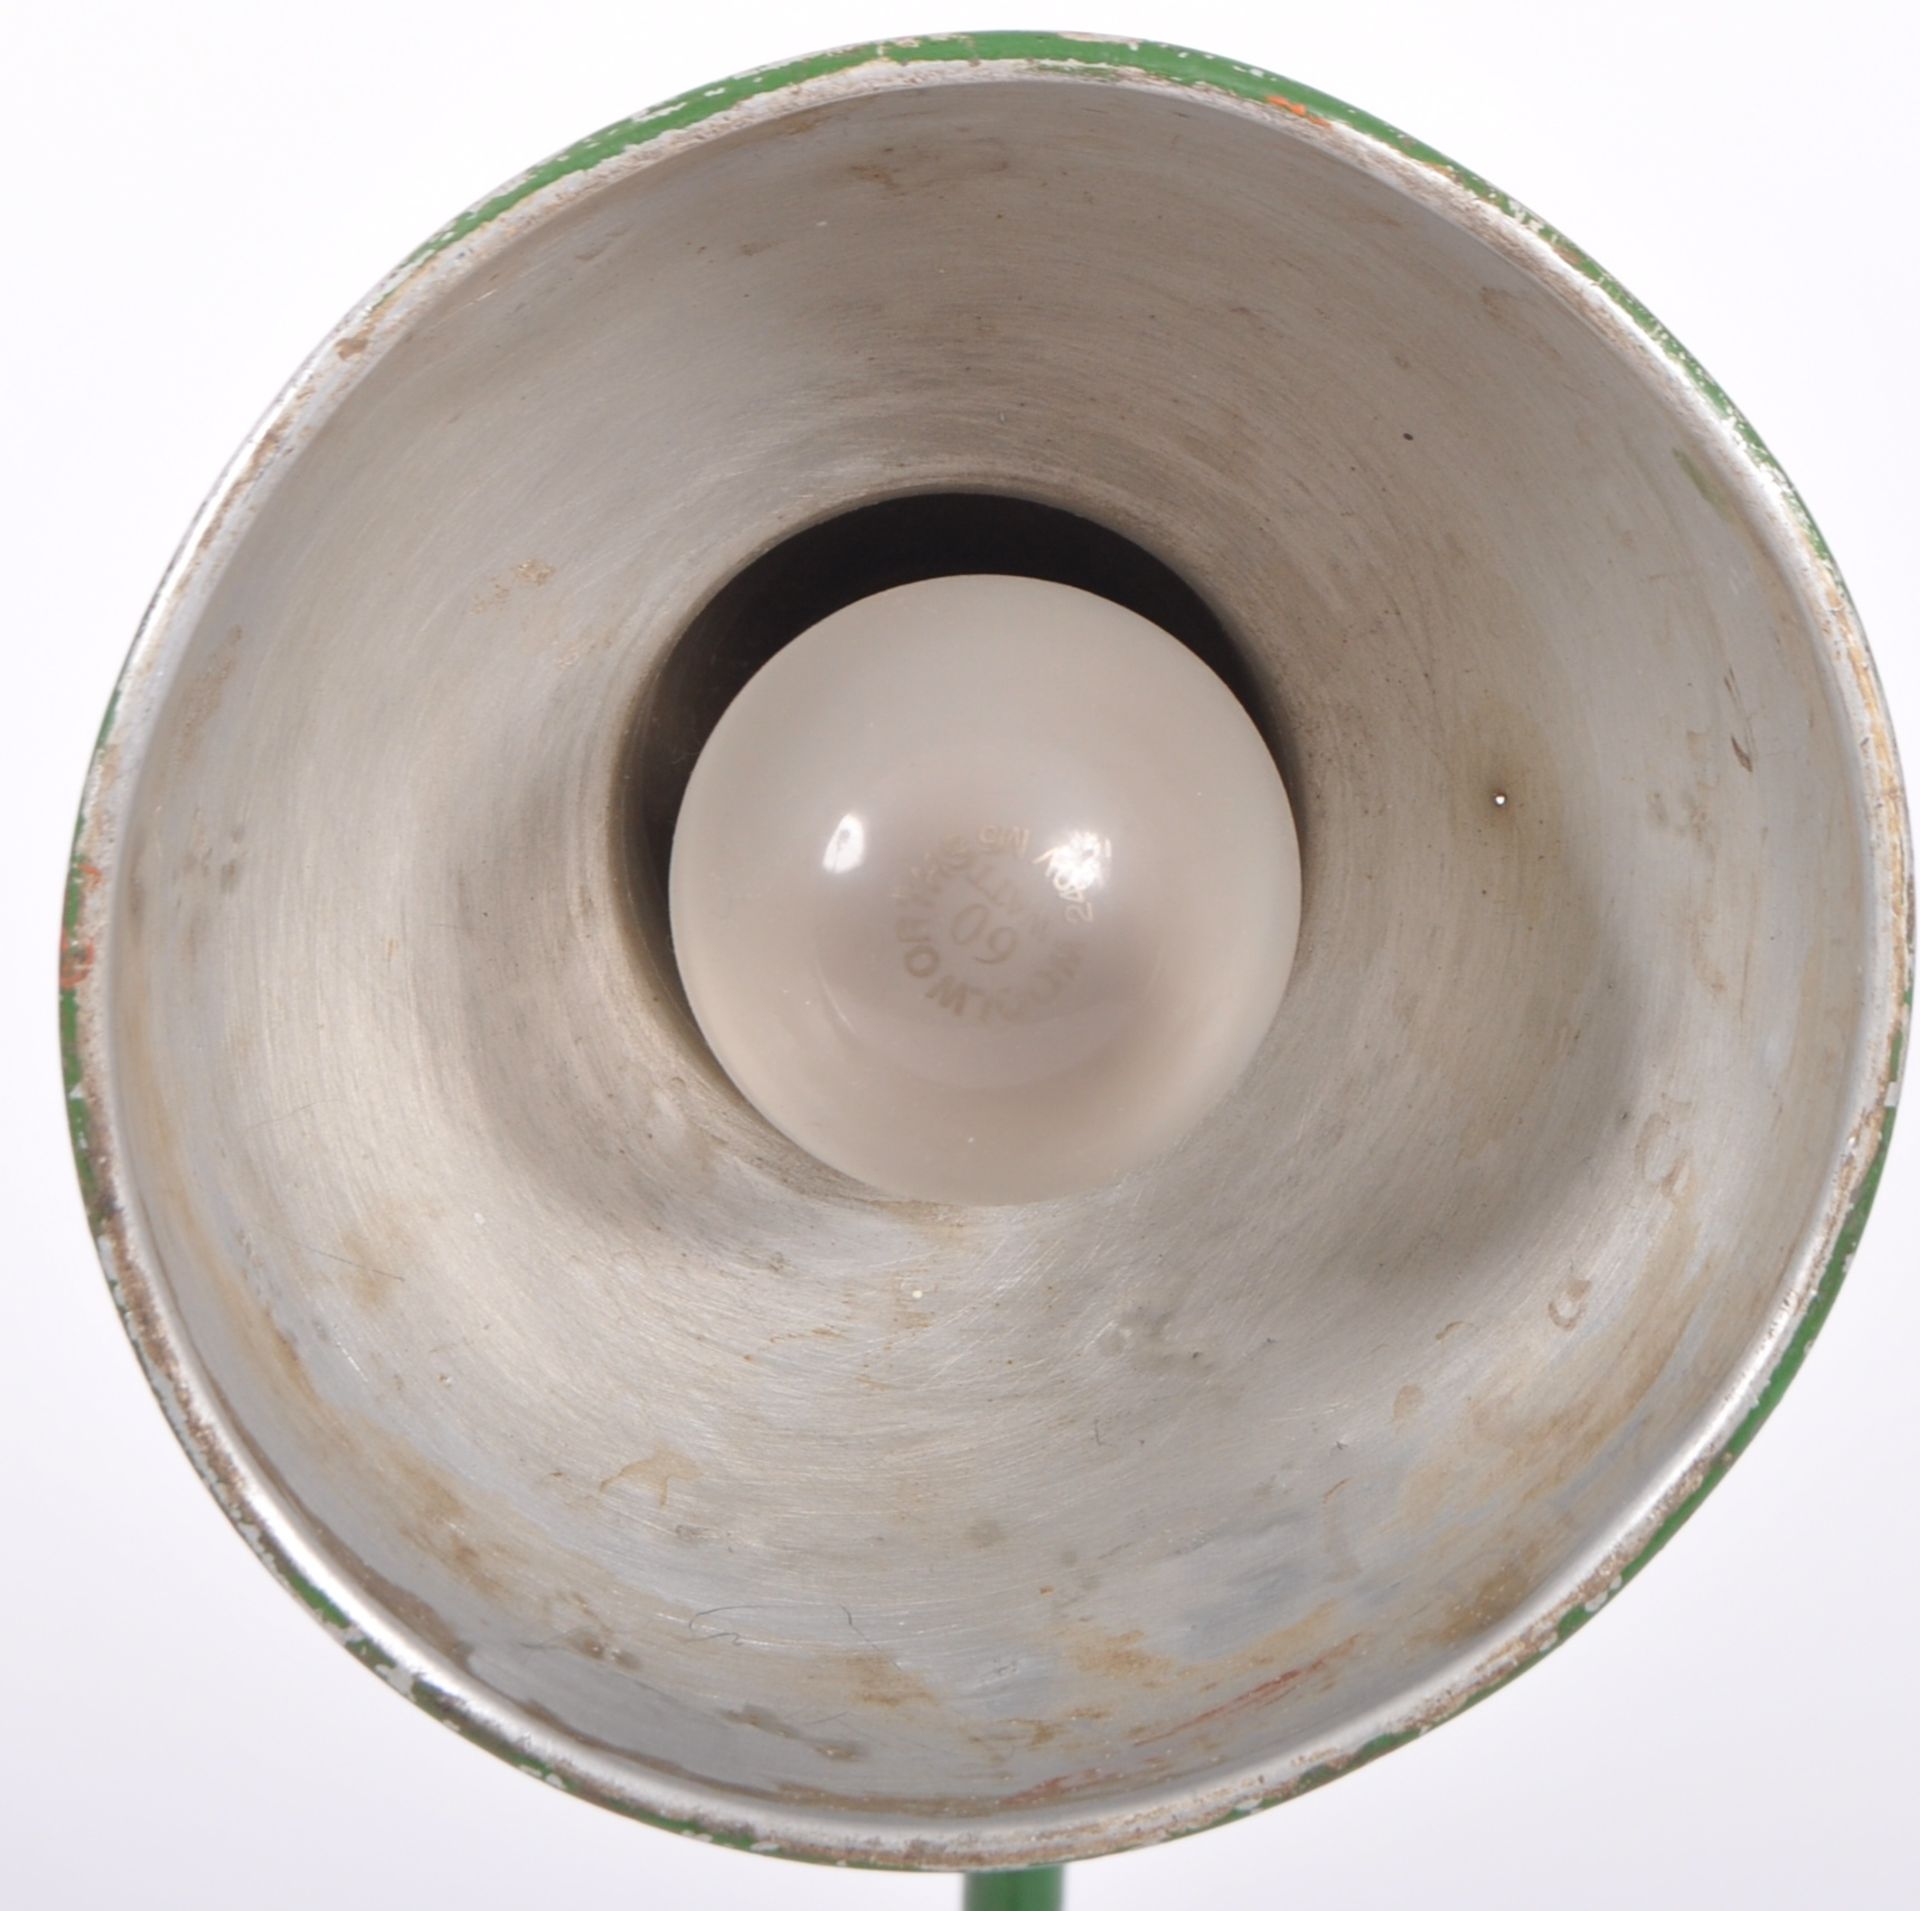 MID CENTURY INDUSTRIAL WORKMEN'S DESK LAMP - Image 7 of 7